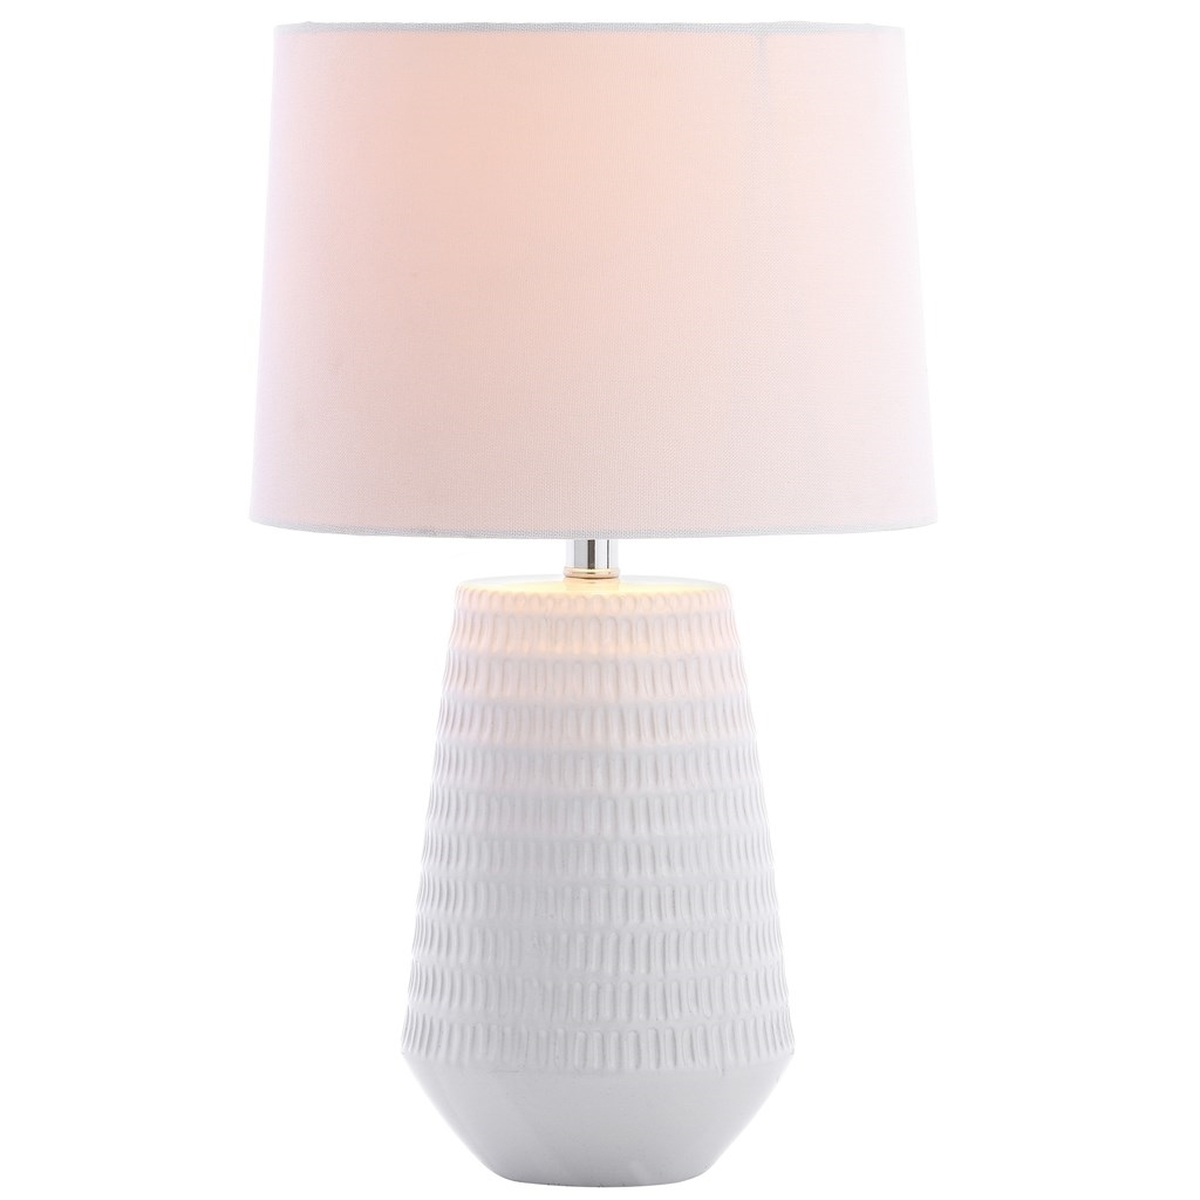 Stark Table Lamp - White - Safavieh - Image 1